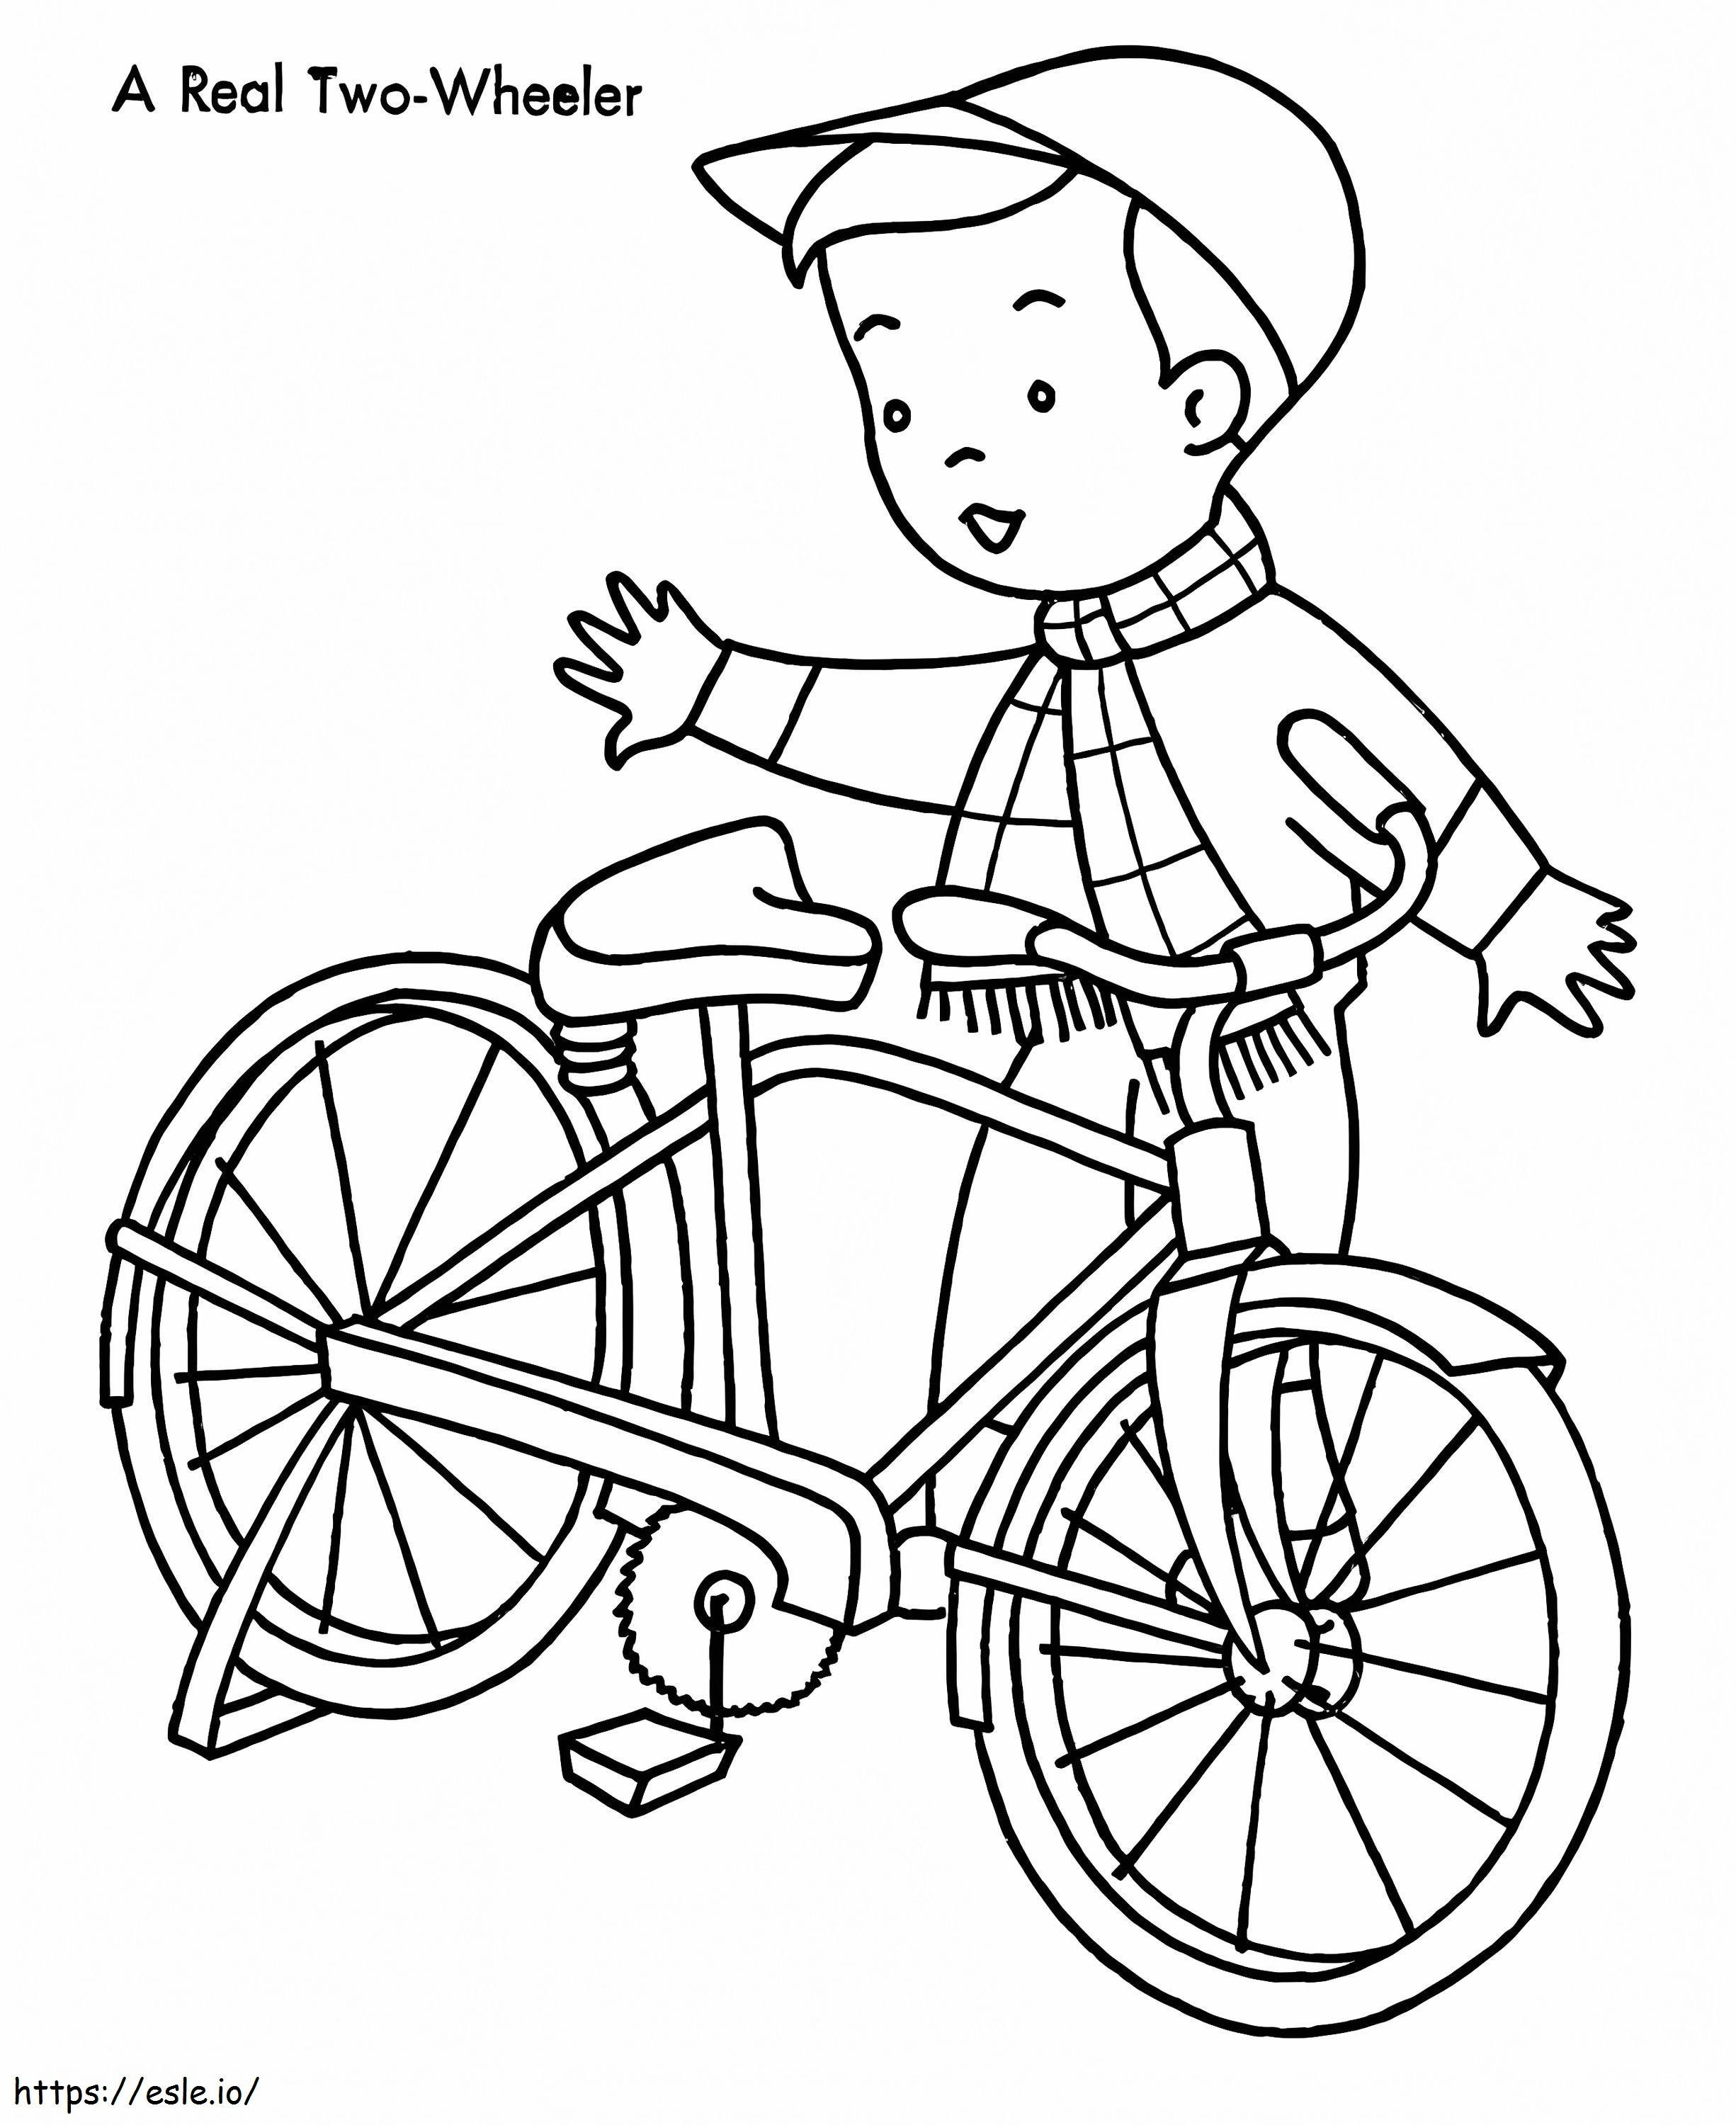 Junge und sein Fahrrad ausmalbilder